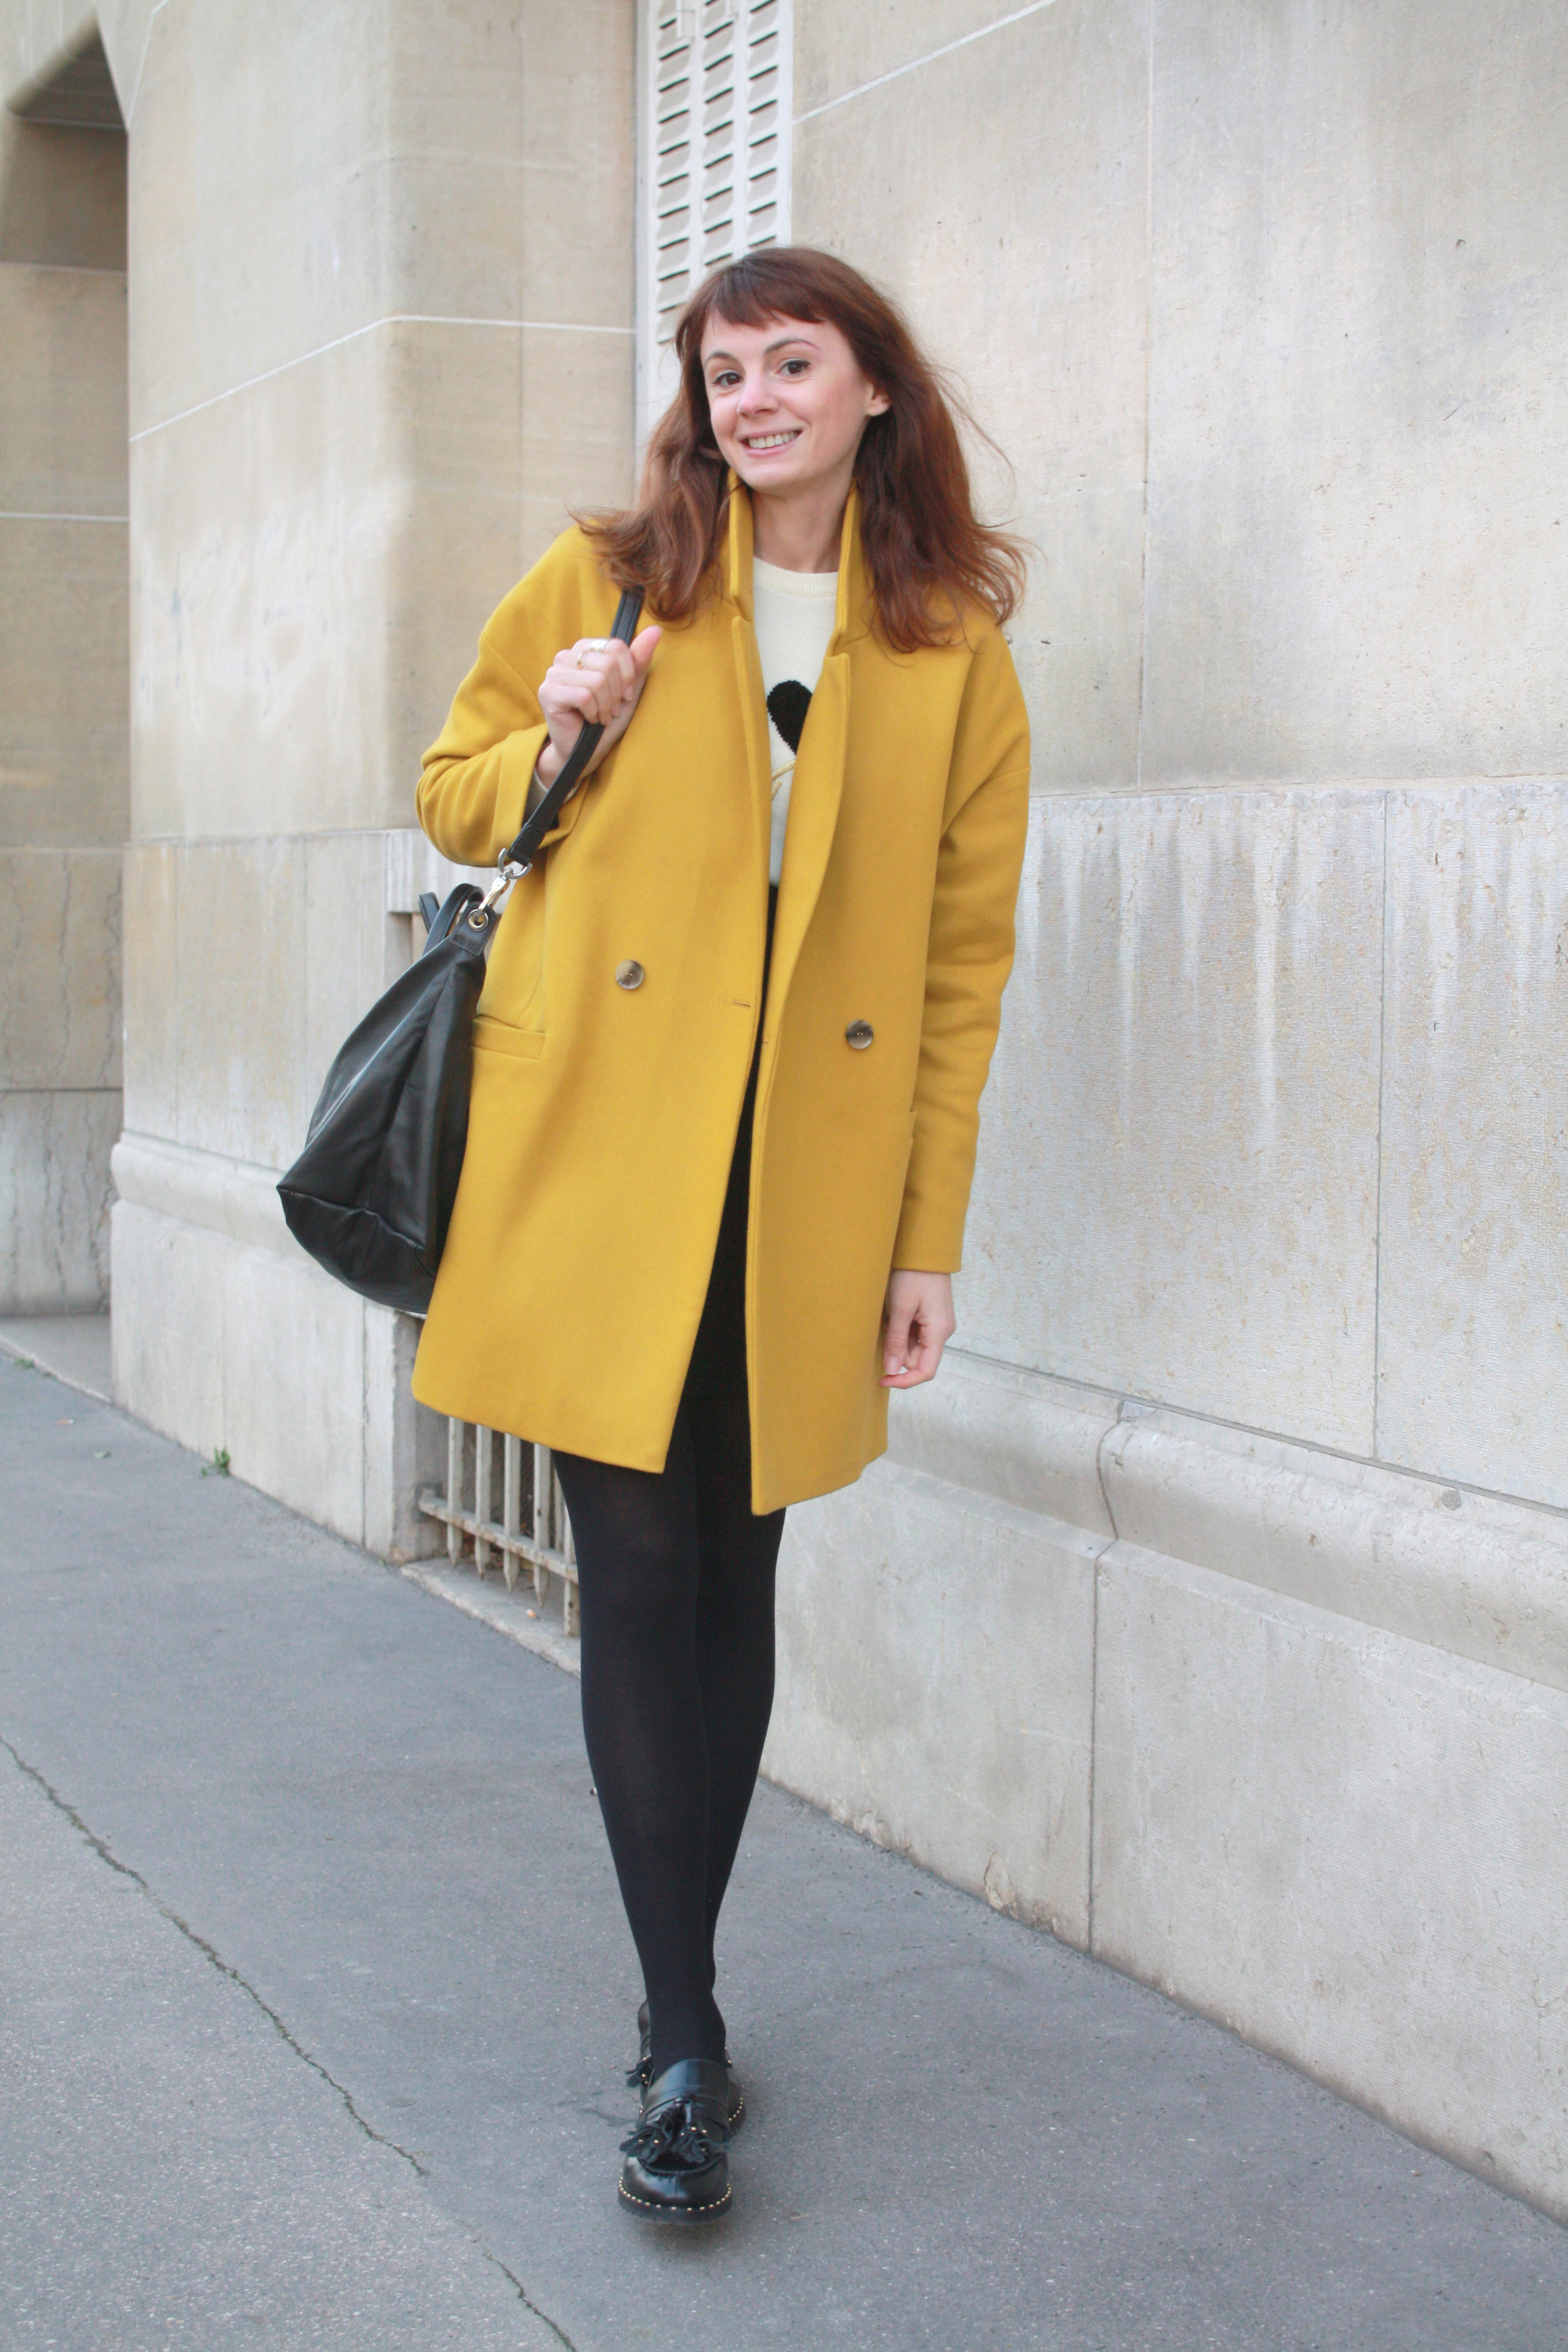 american vintage manteau jaune